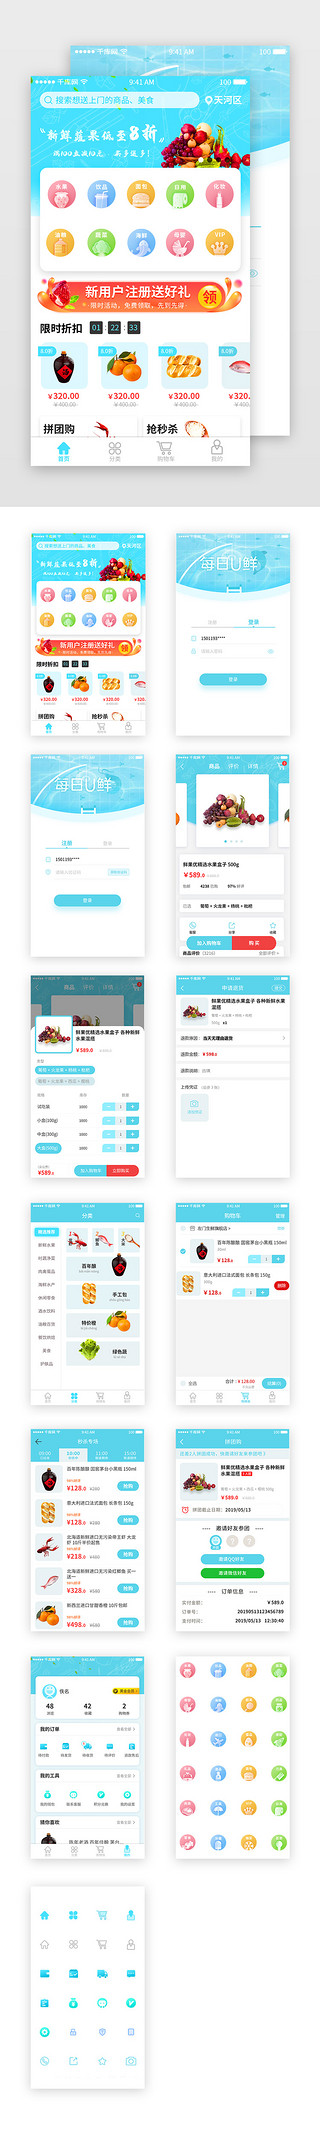 蓝色app套图UI设计素材_蓝色清新风生鲜电商购物APP套图